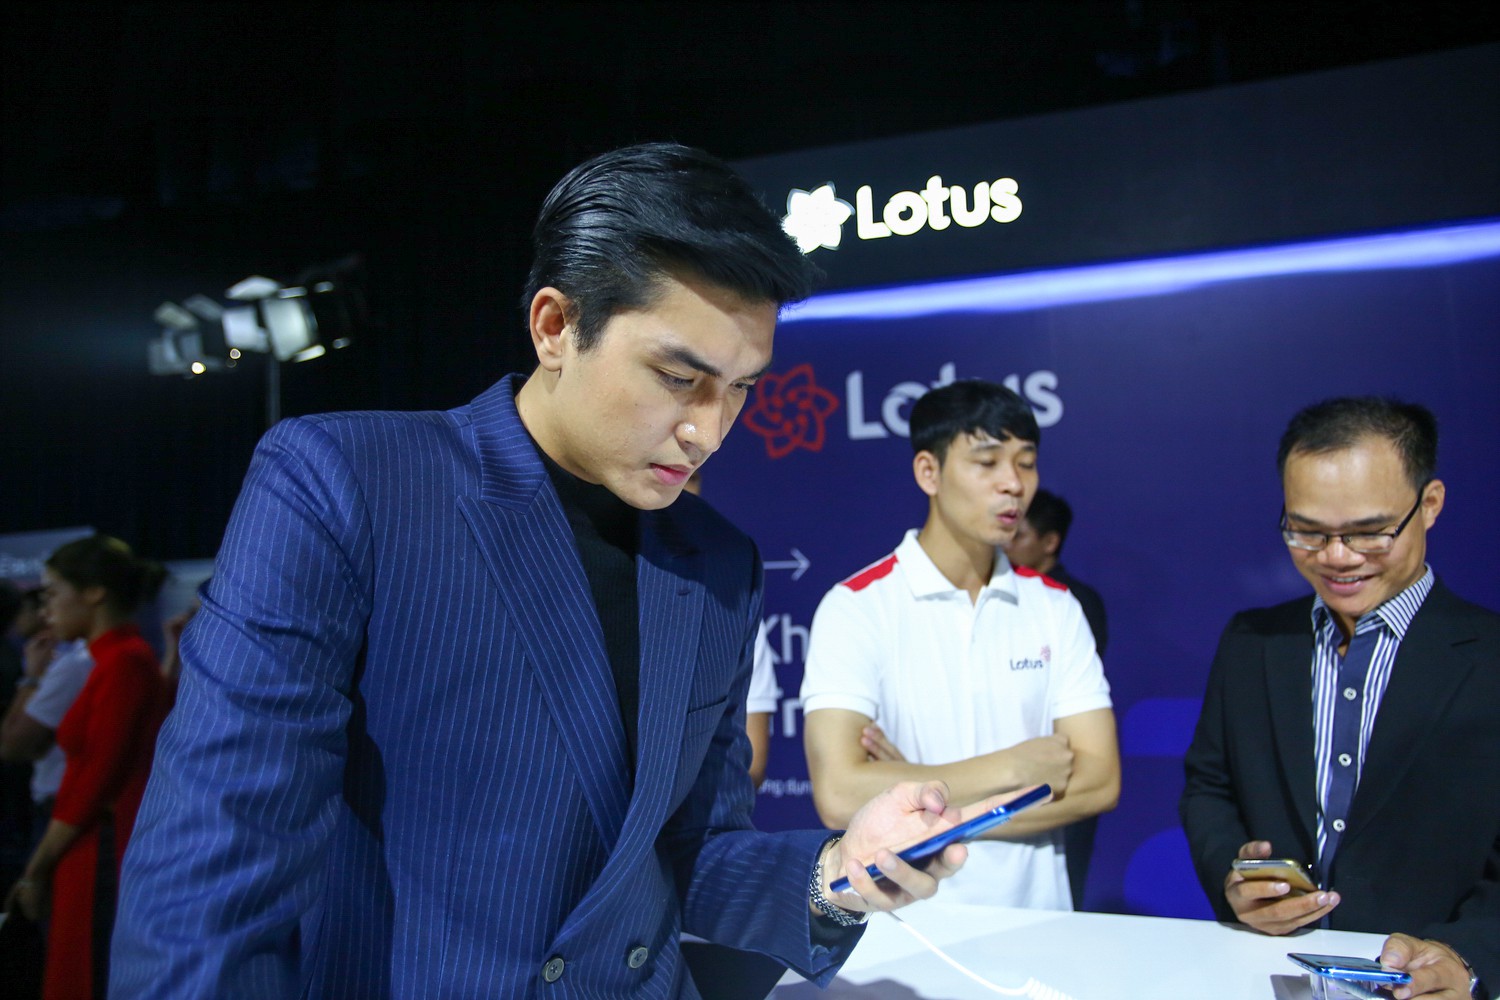 [Live] Lễ ra mắt mạng xã hội Lotus: Nghìn sao quy tụ, màn trình diễn công nghệ mãn nhãn - Ảnh 5.